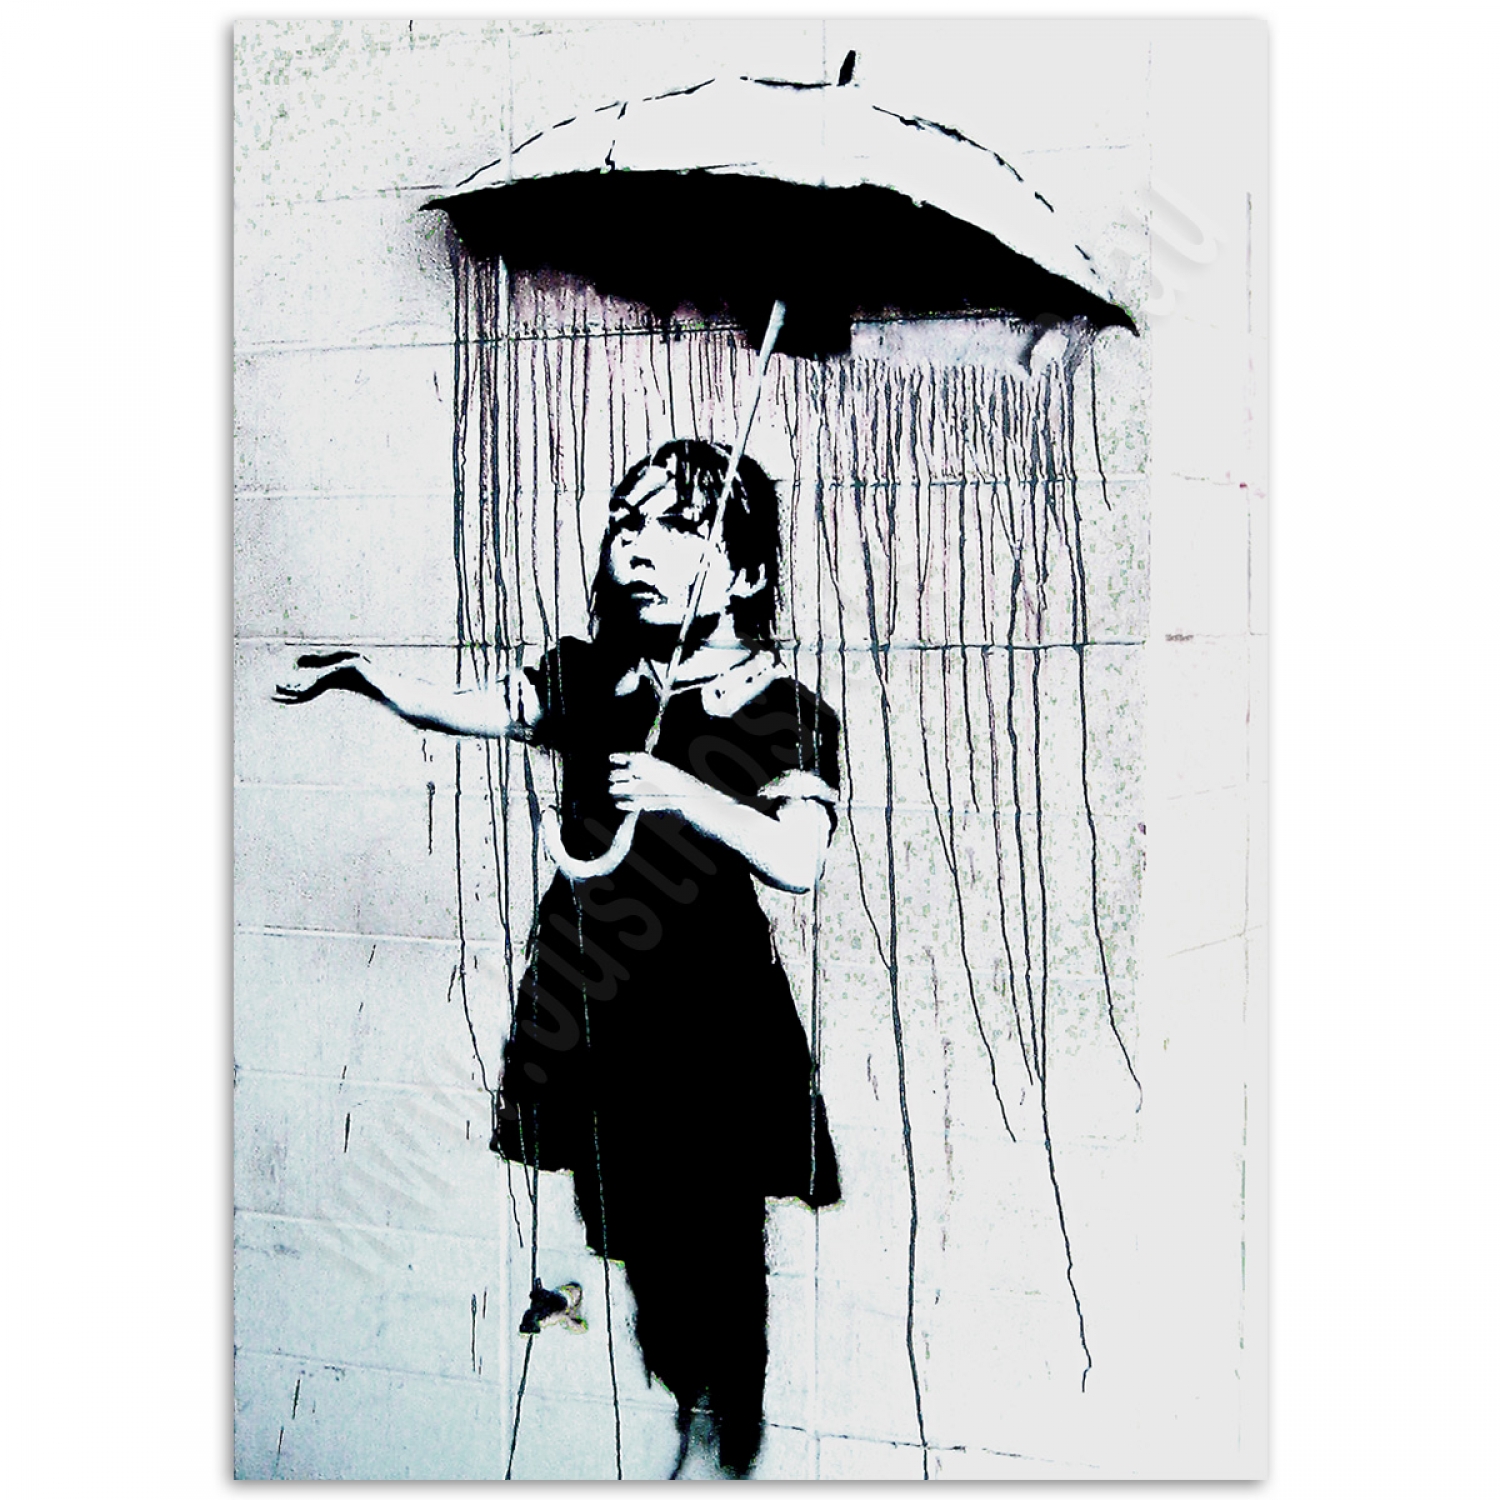 https://justposters.com.au/image/cache/catalog/POSTERS/GRAFFITI/BANKSY/BANKSY-Umbrella-Girl_JustPosters_Banksy-Street-Art-Poster-1500x1500.jpg